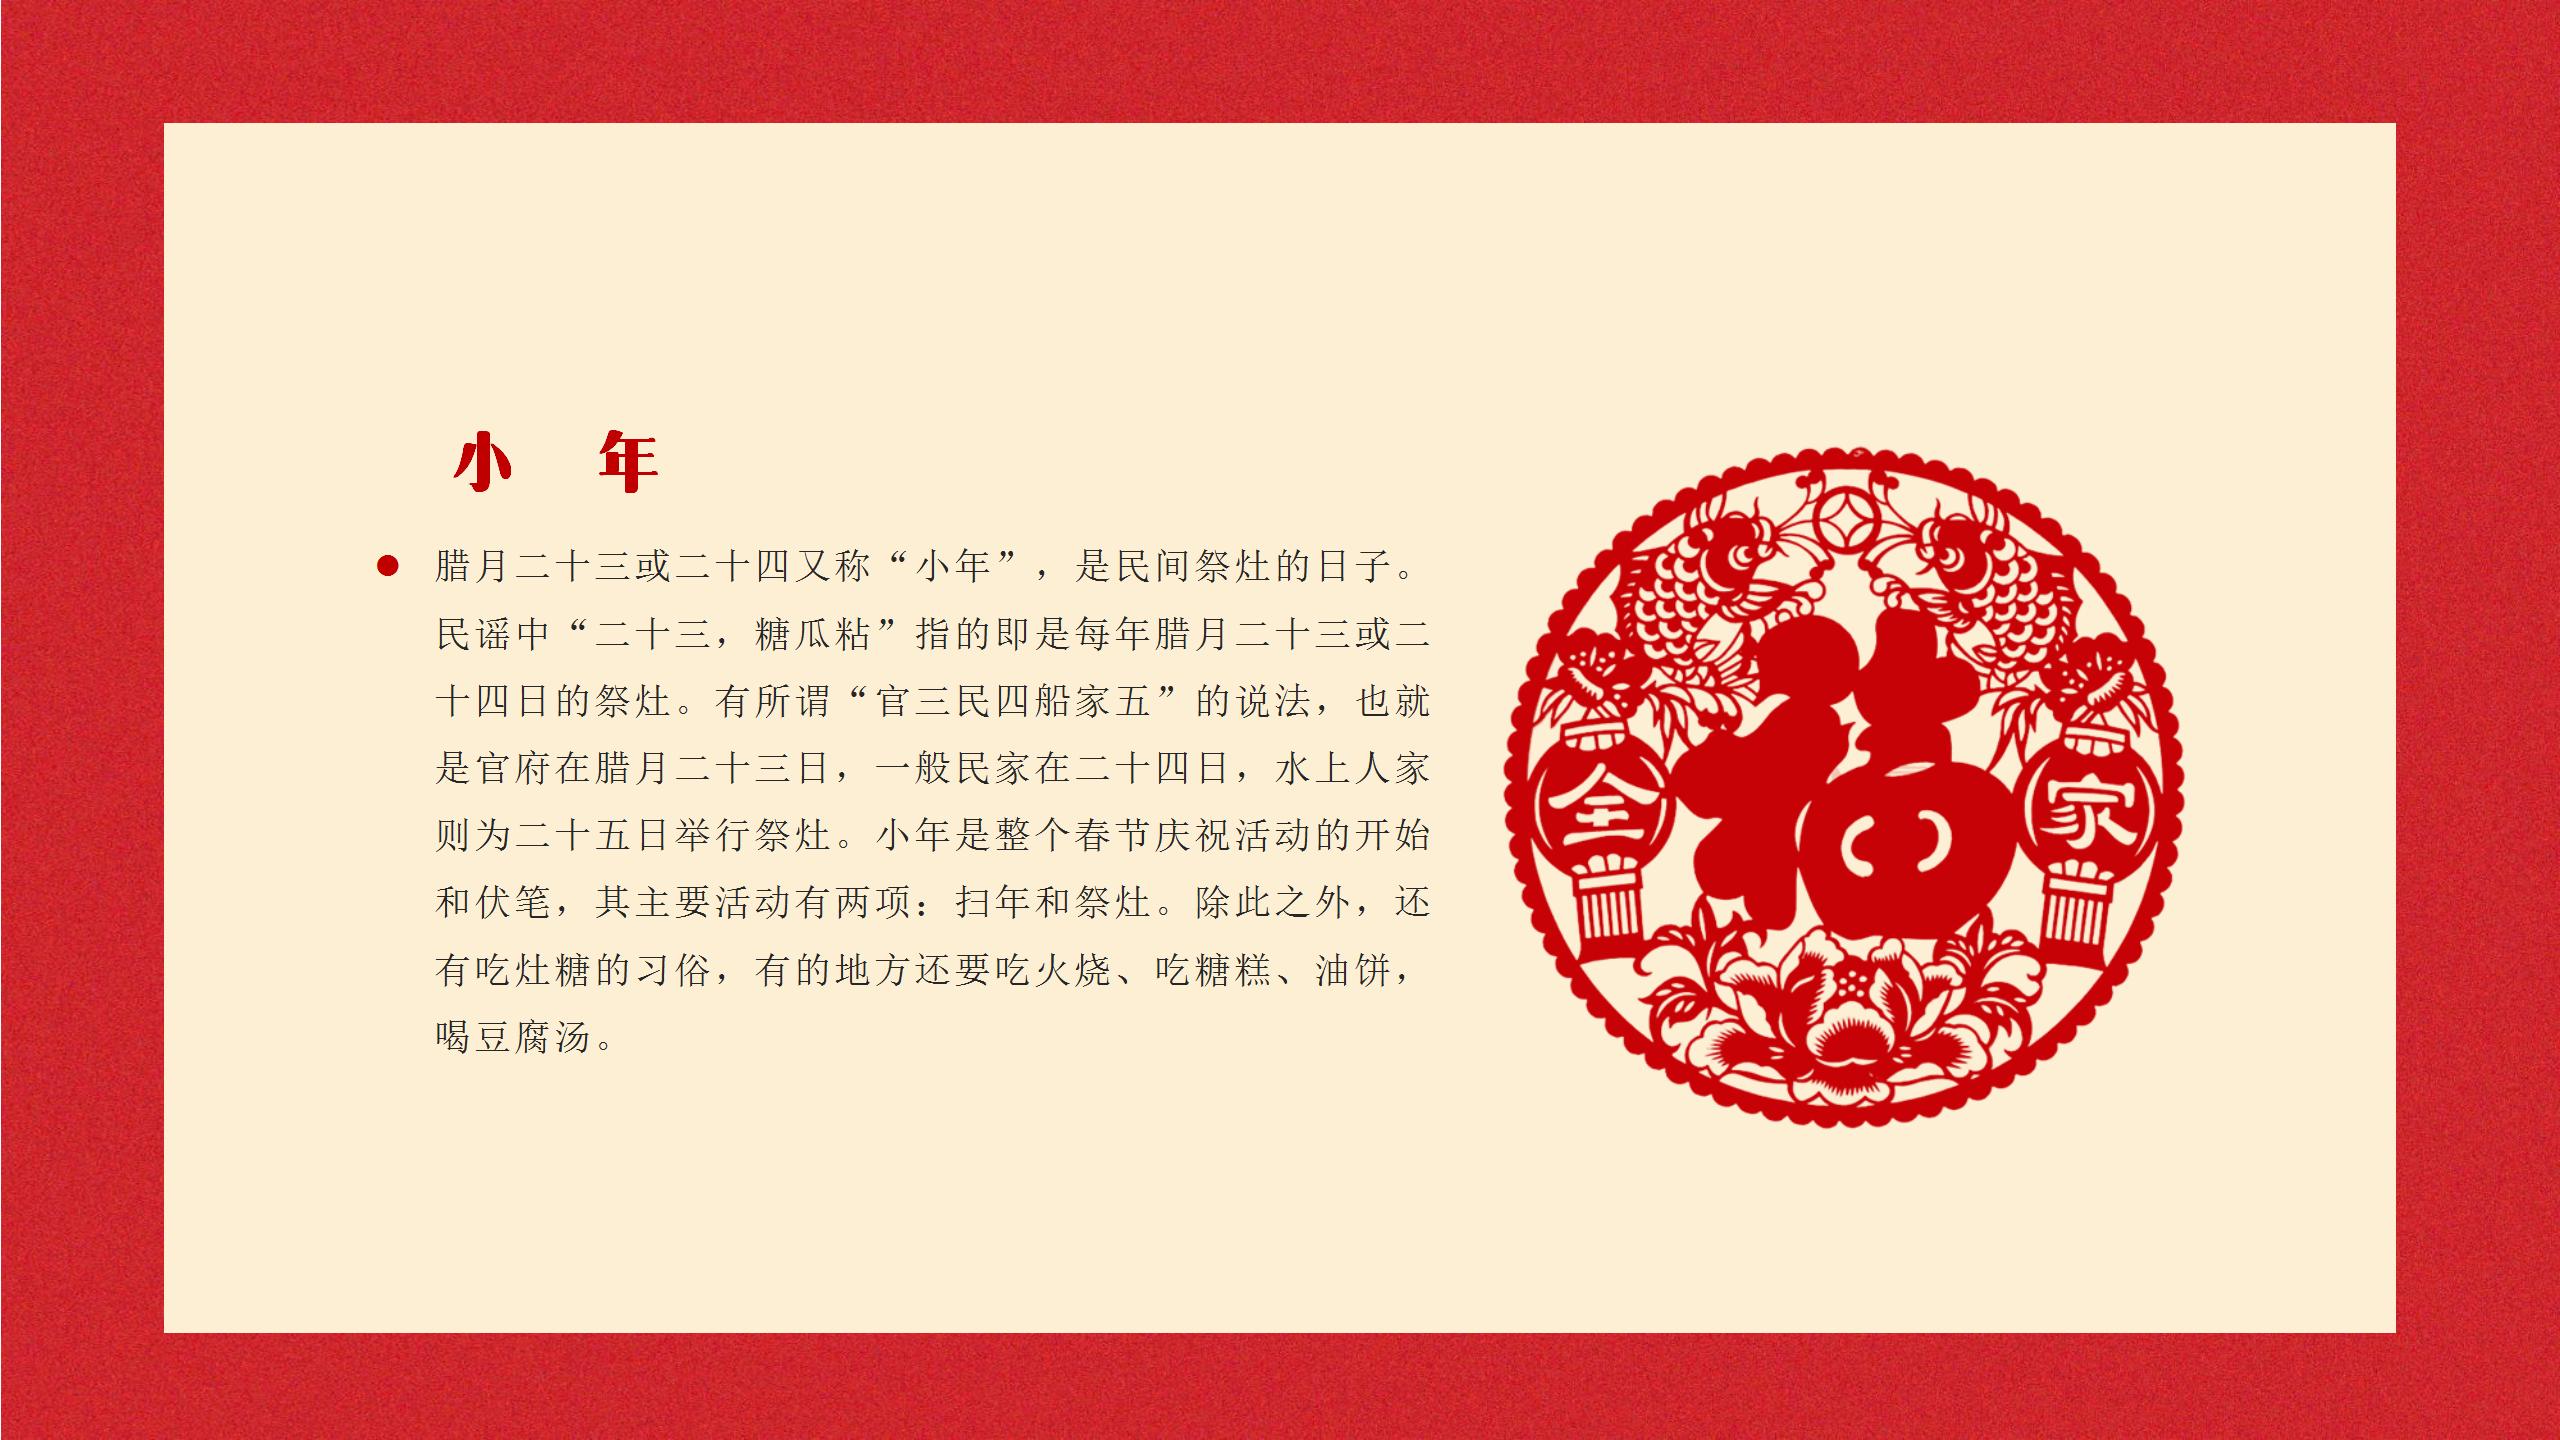 红色喜庆春节宣传PPT模板